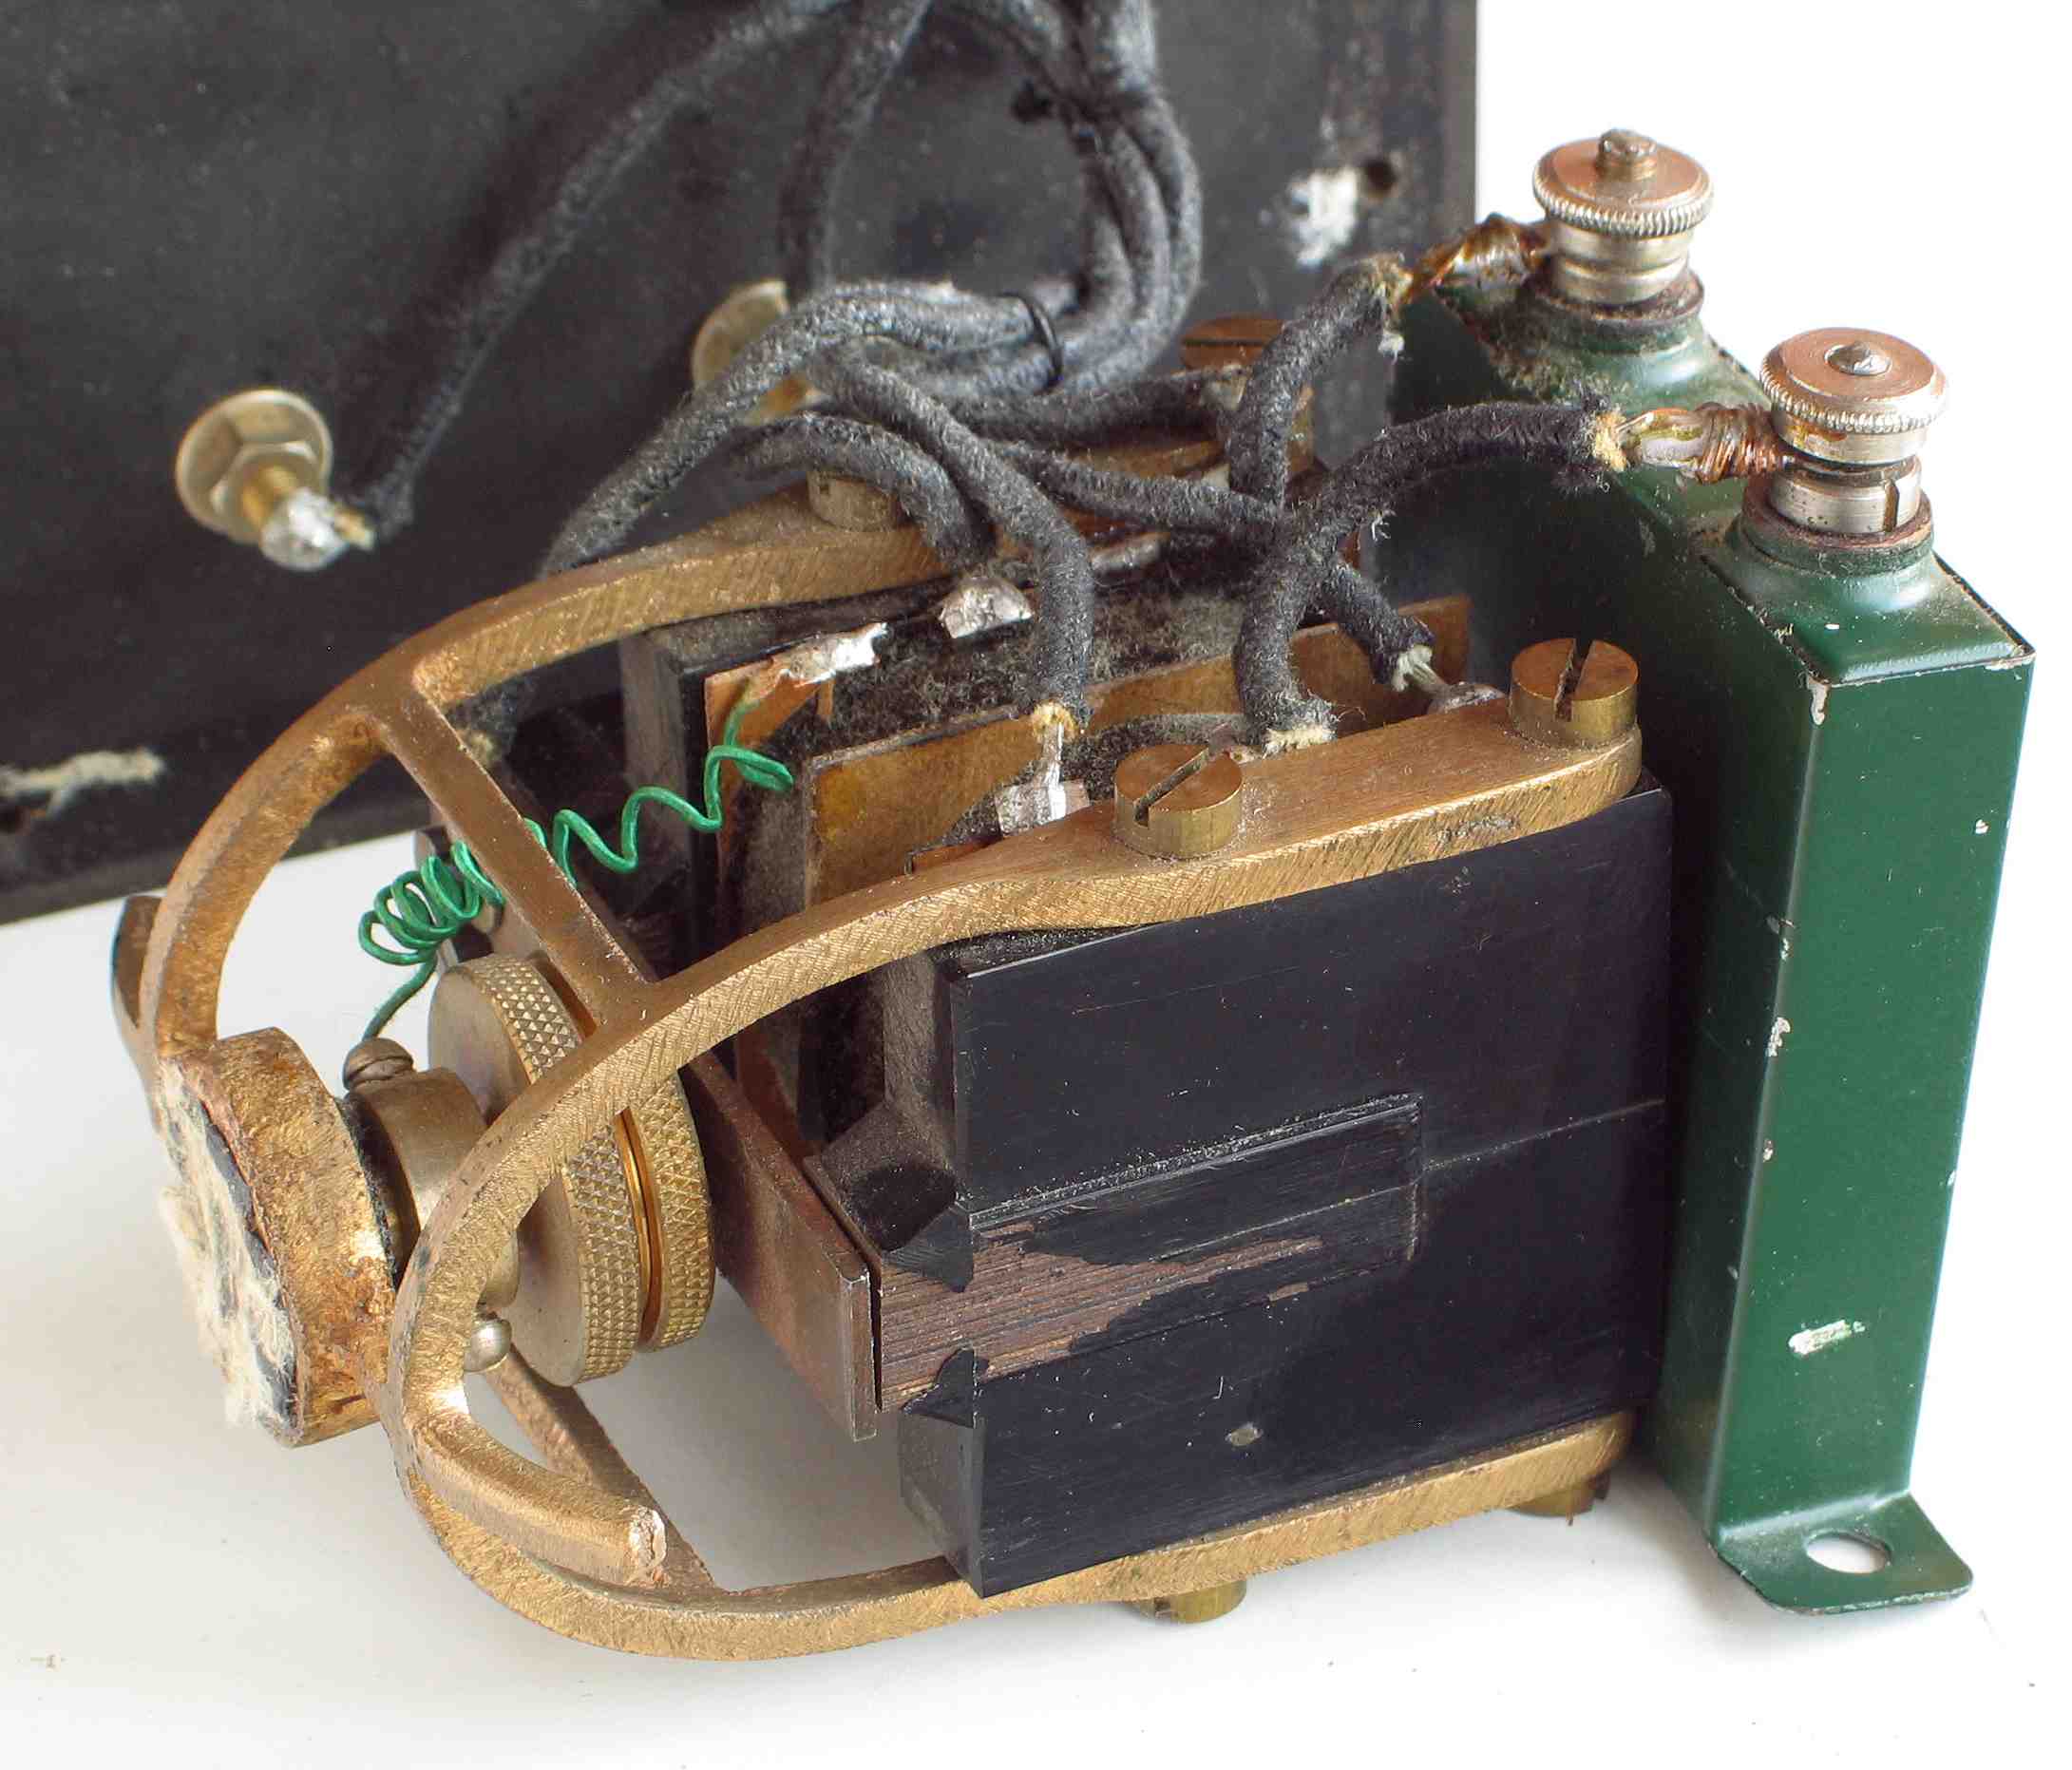 Générateur de tension alternative à 1 kHz
(“Cambridge Reed Hummer”)